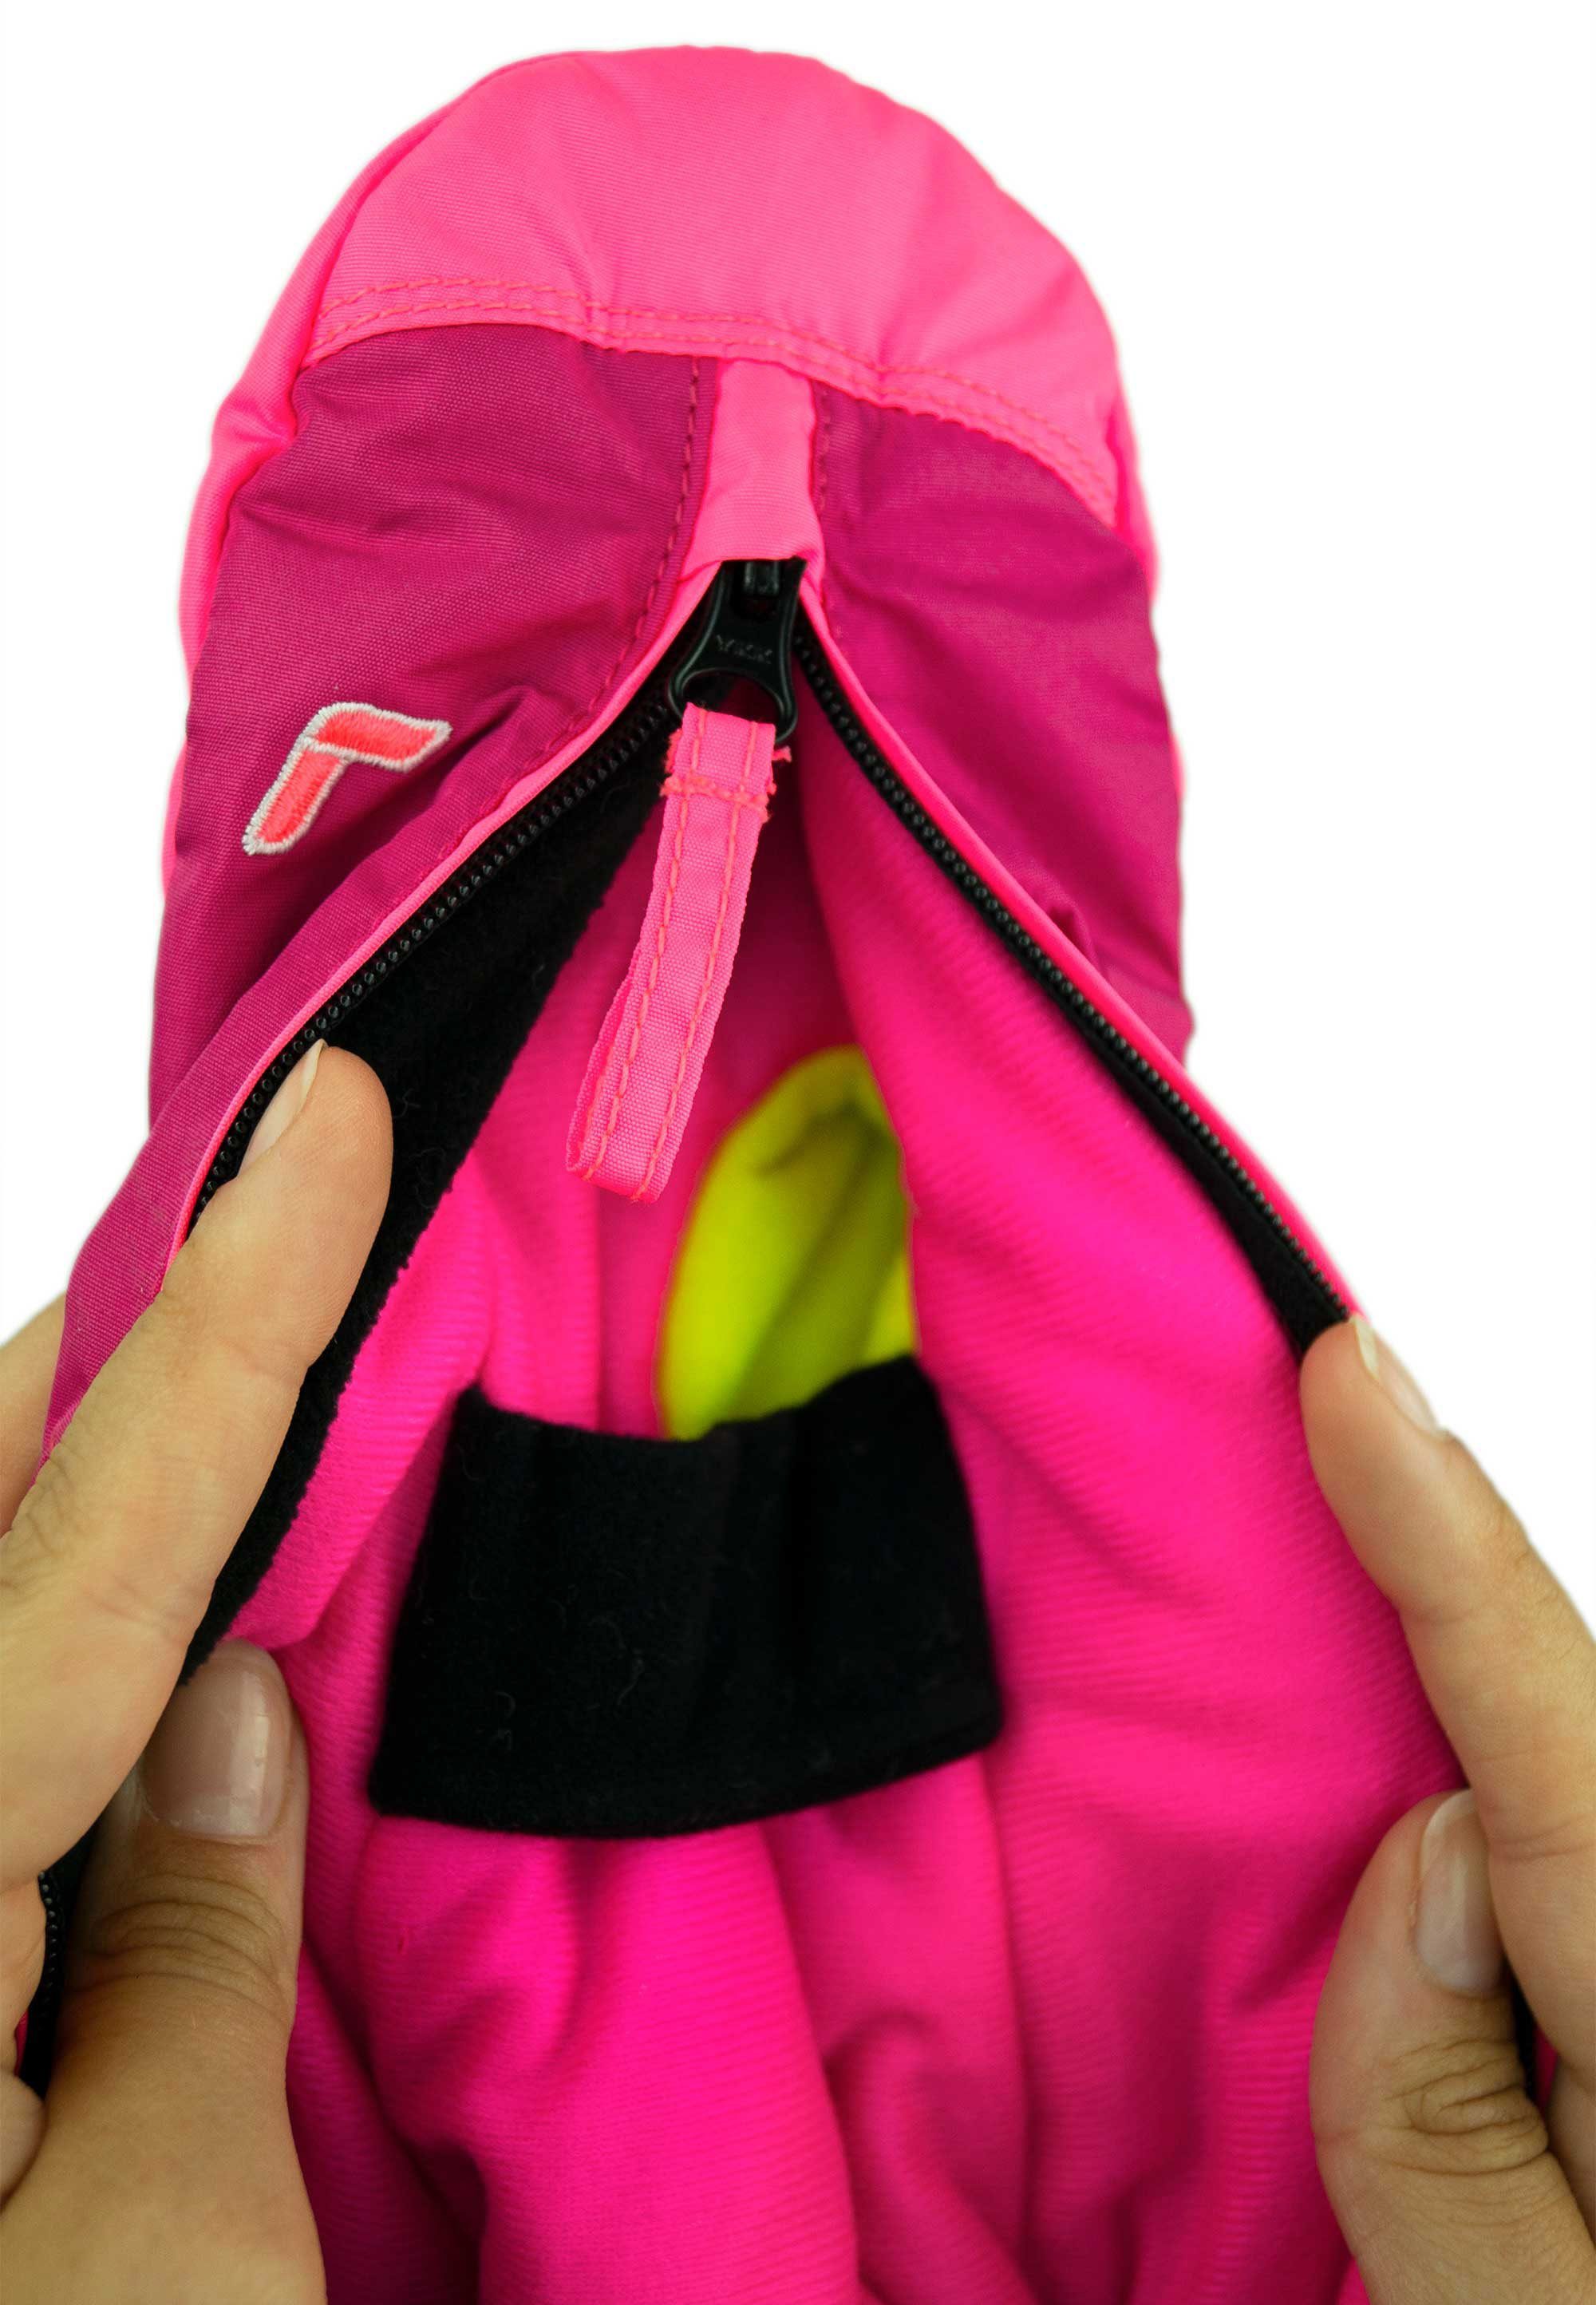 Tom lila-pink Fäustlinge atmungsaktivem Material aus extra Mitten Reusch